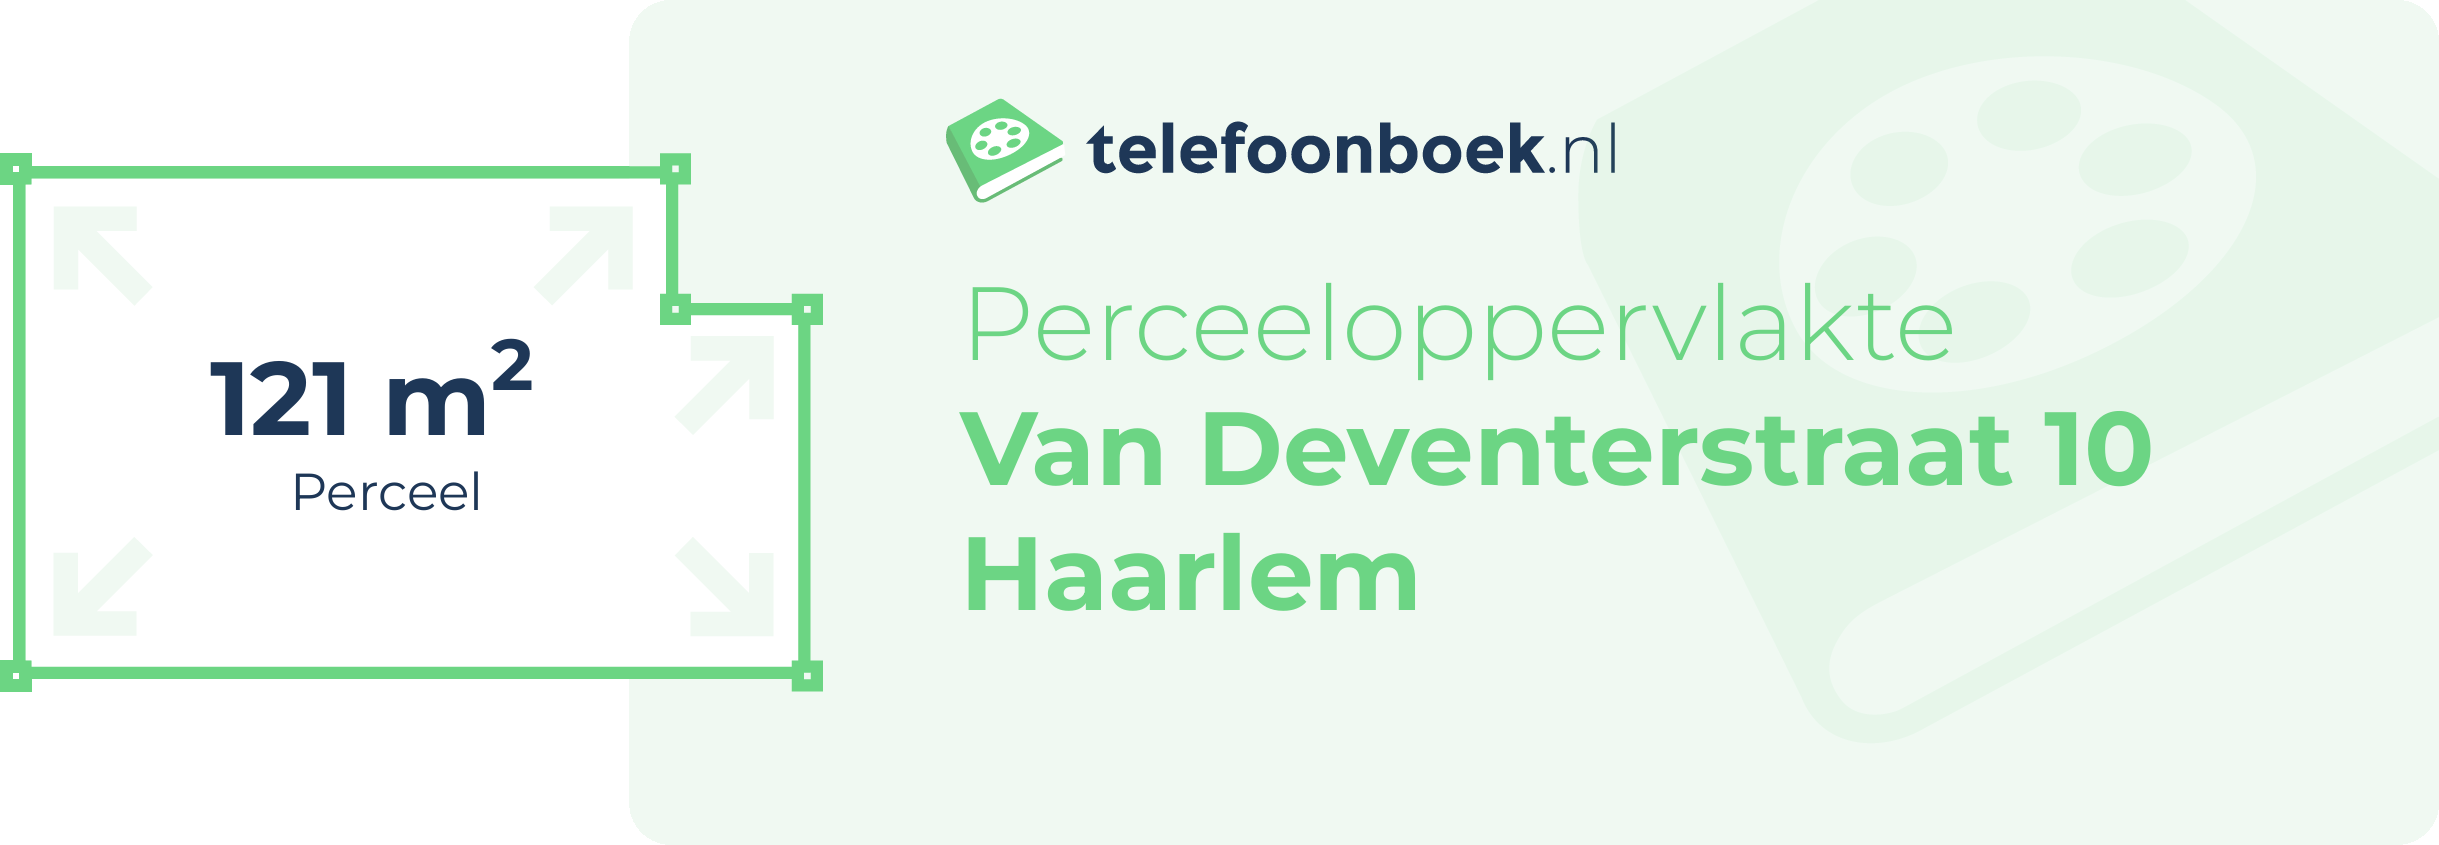 Perceeloppervlakte Van Deventerstraat 10 Haarlem